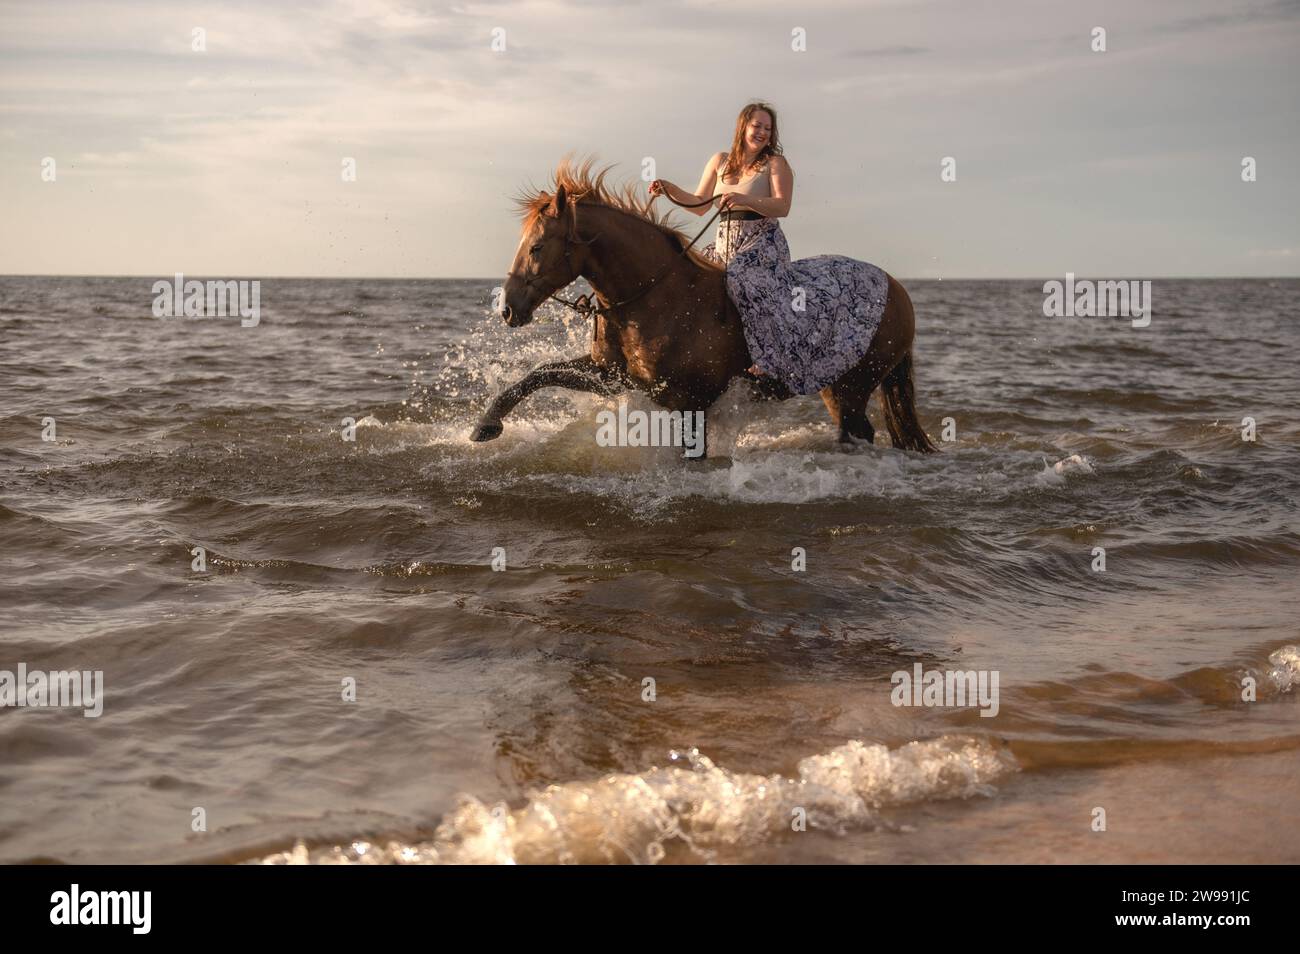 Eine Reiterin wird auf dem Bild abgebildet, die einen gemütlichen Ausritt im Meer genießt Stockfoto